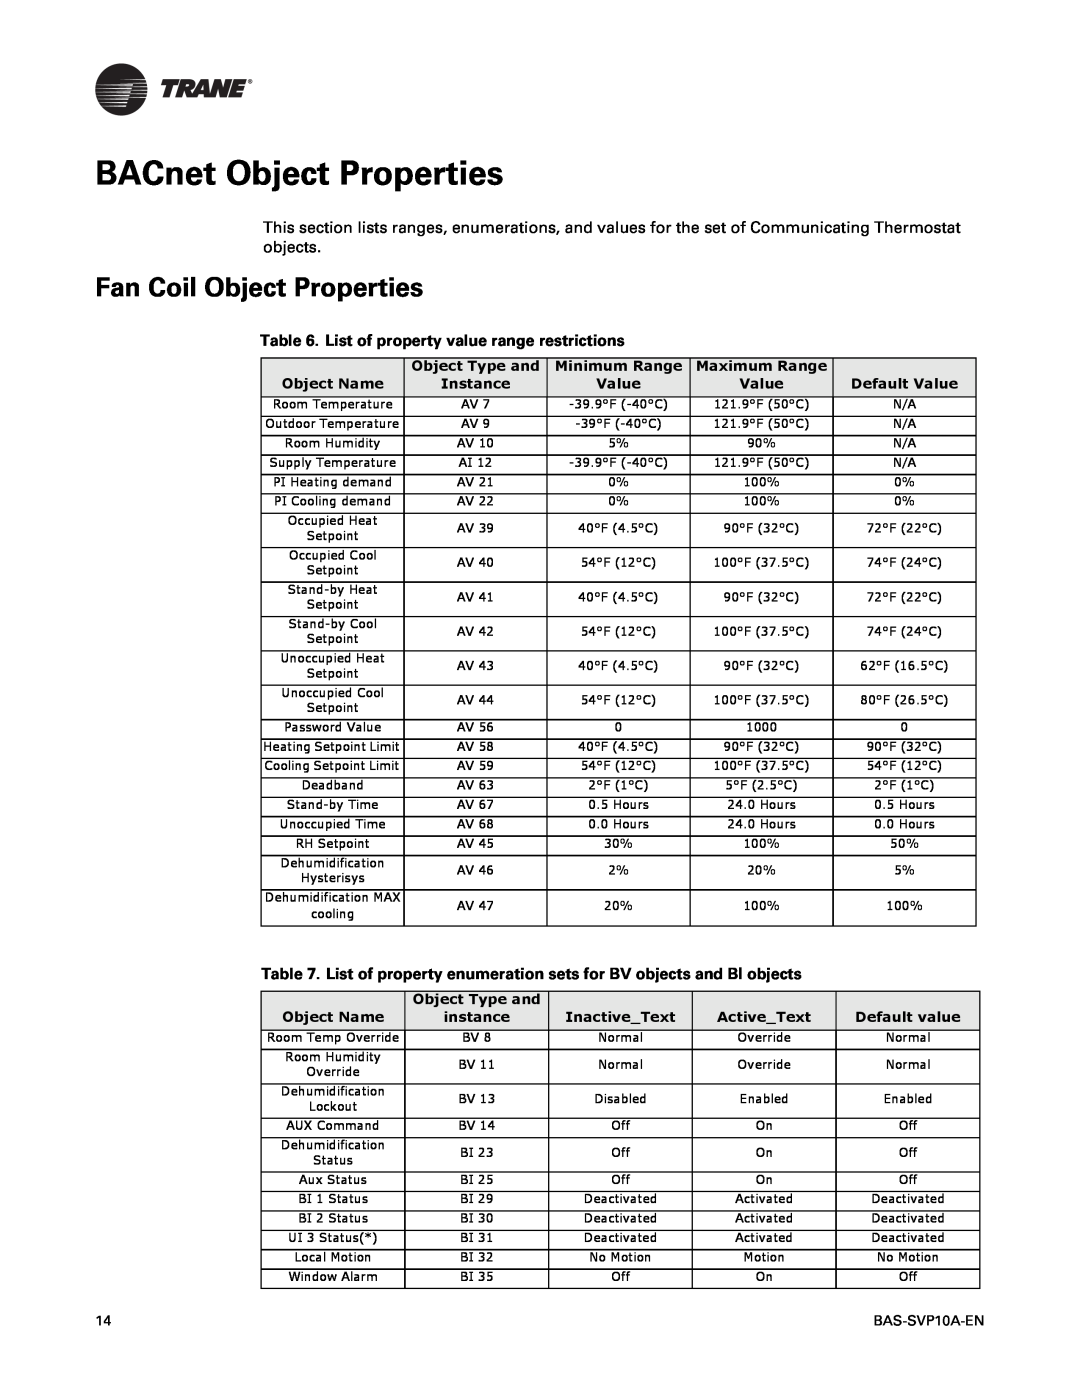 Trane BAS-SVP10A-EN manual BACnet Object Properties, Fan Coil Object Properties, List of property value range restrictions 